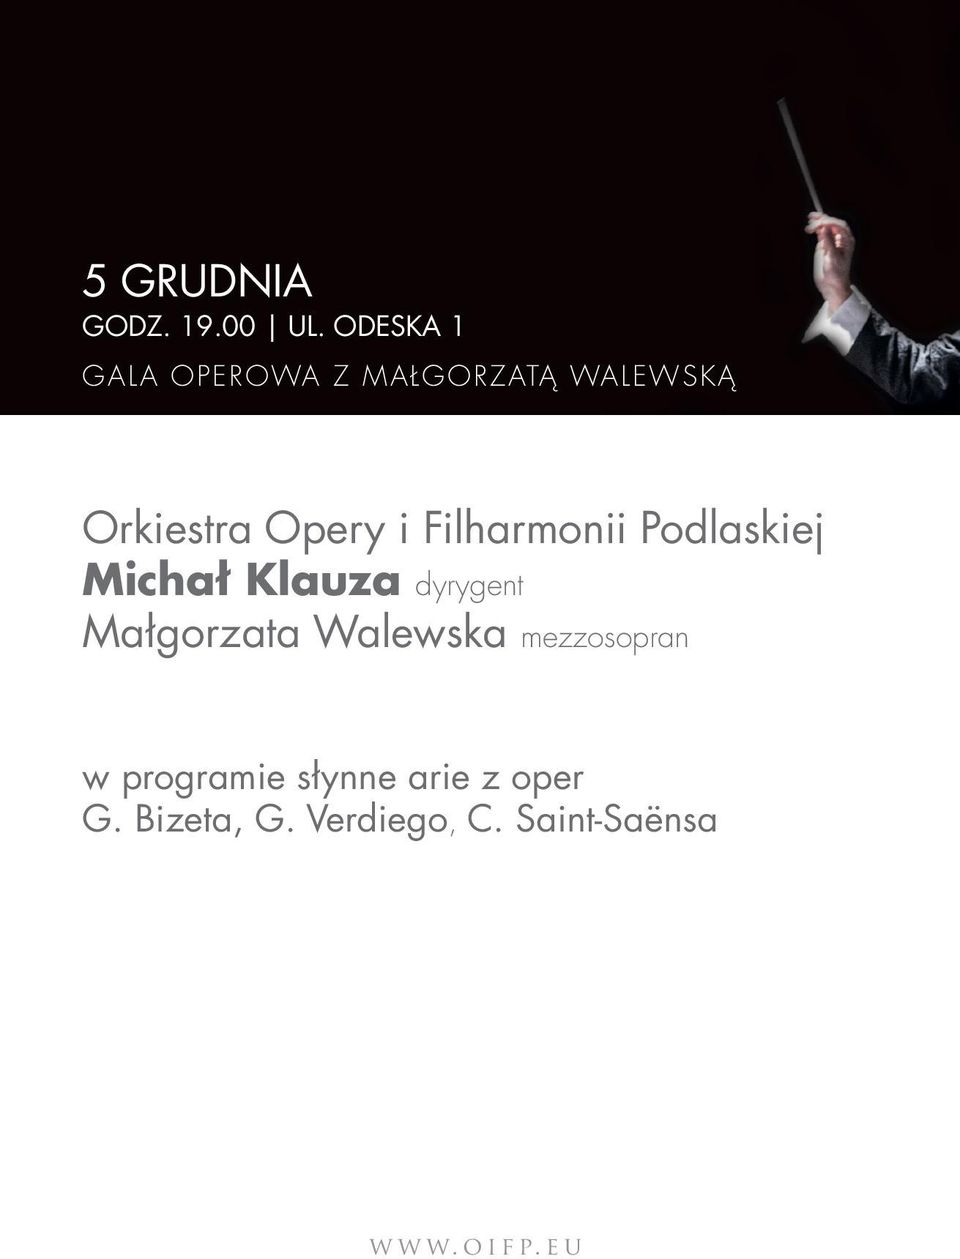 Opery i Filharmonii Podlaskiej Michał Klauza dyrygent